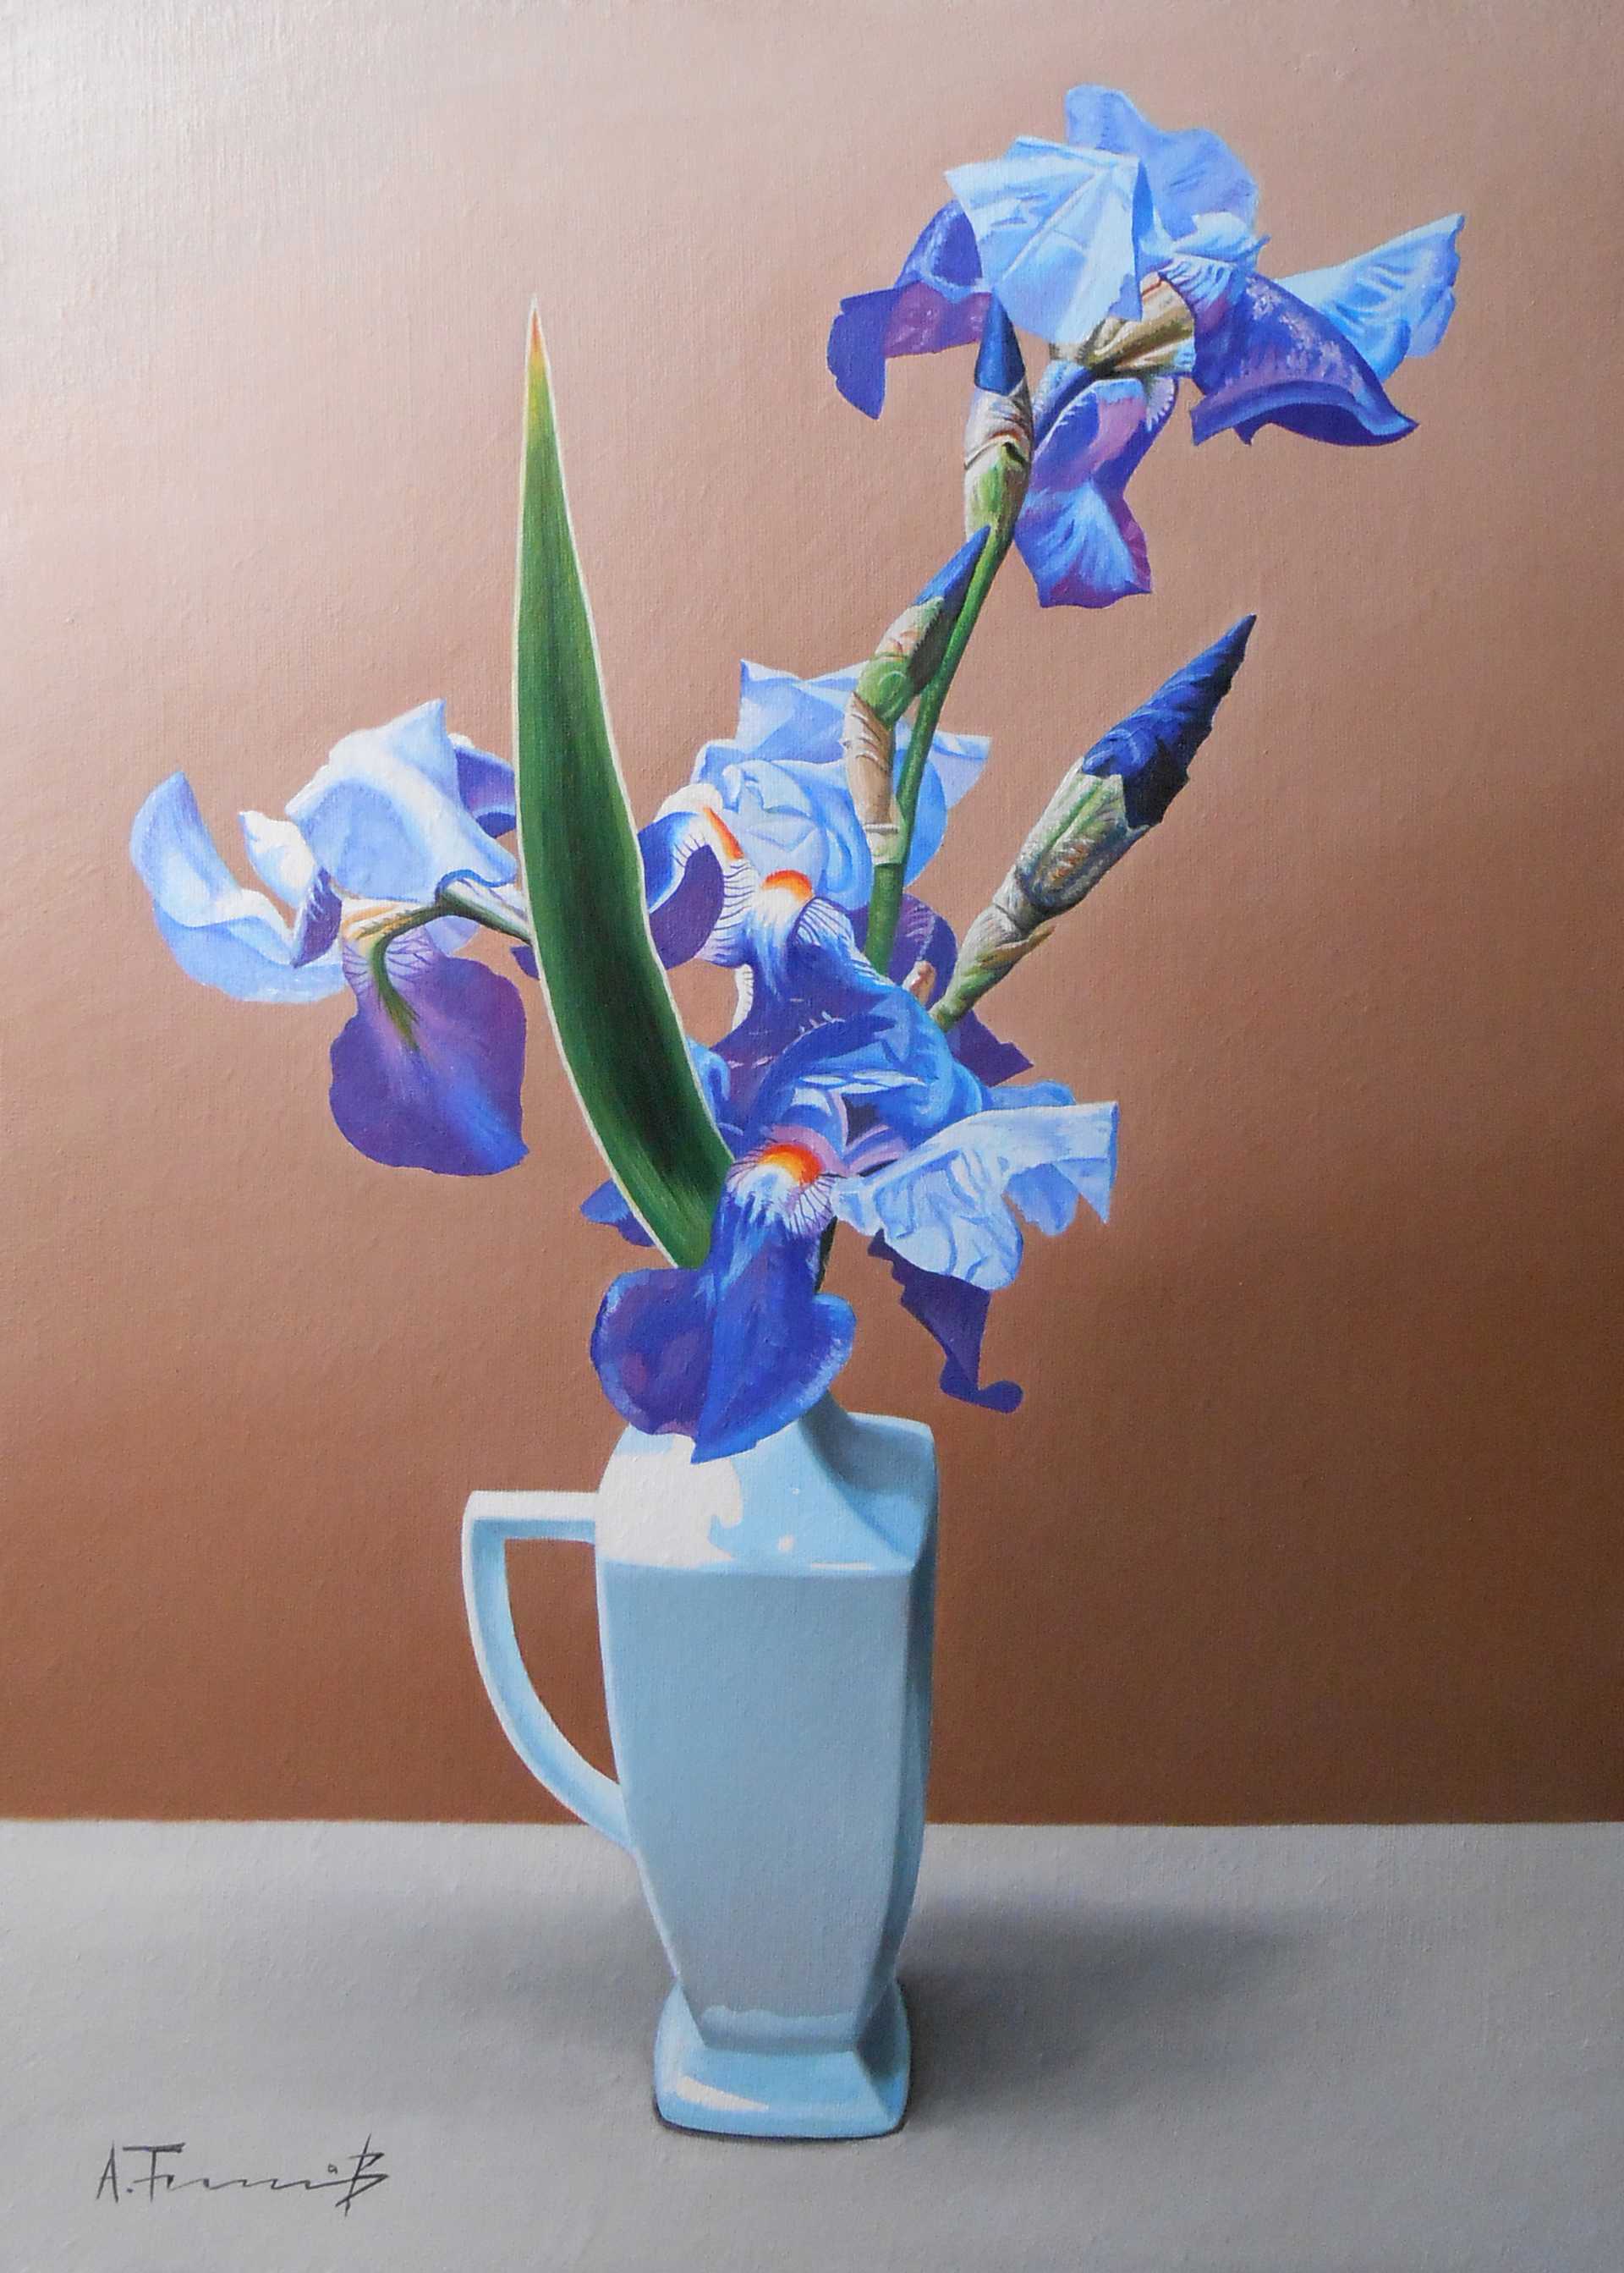 Iris in a vase